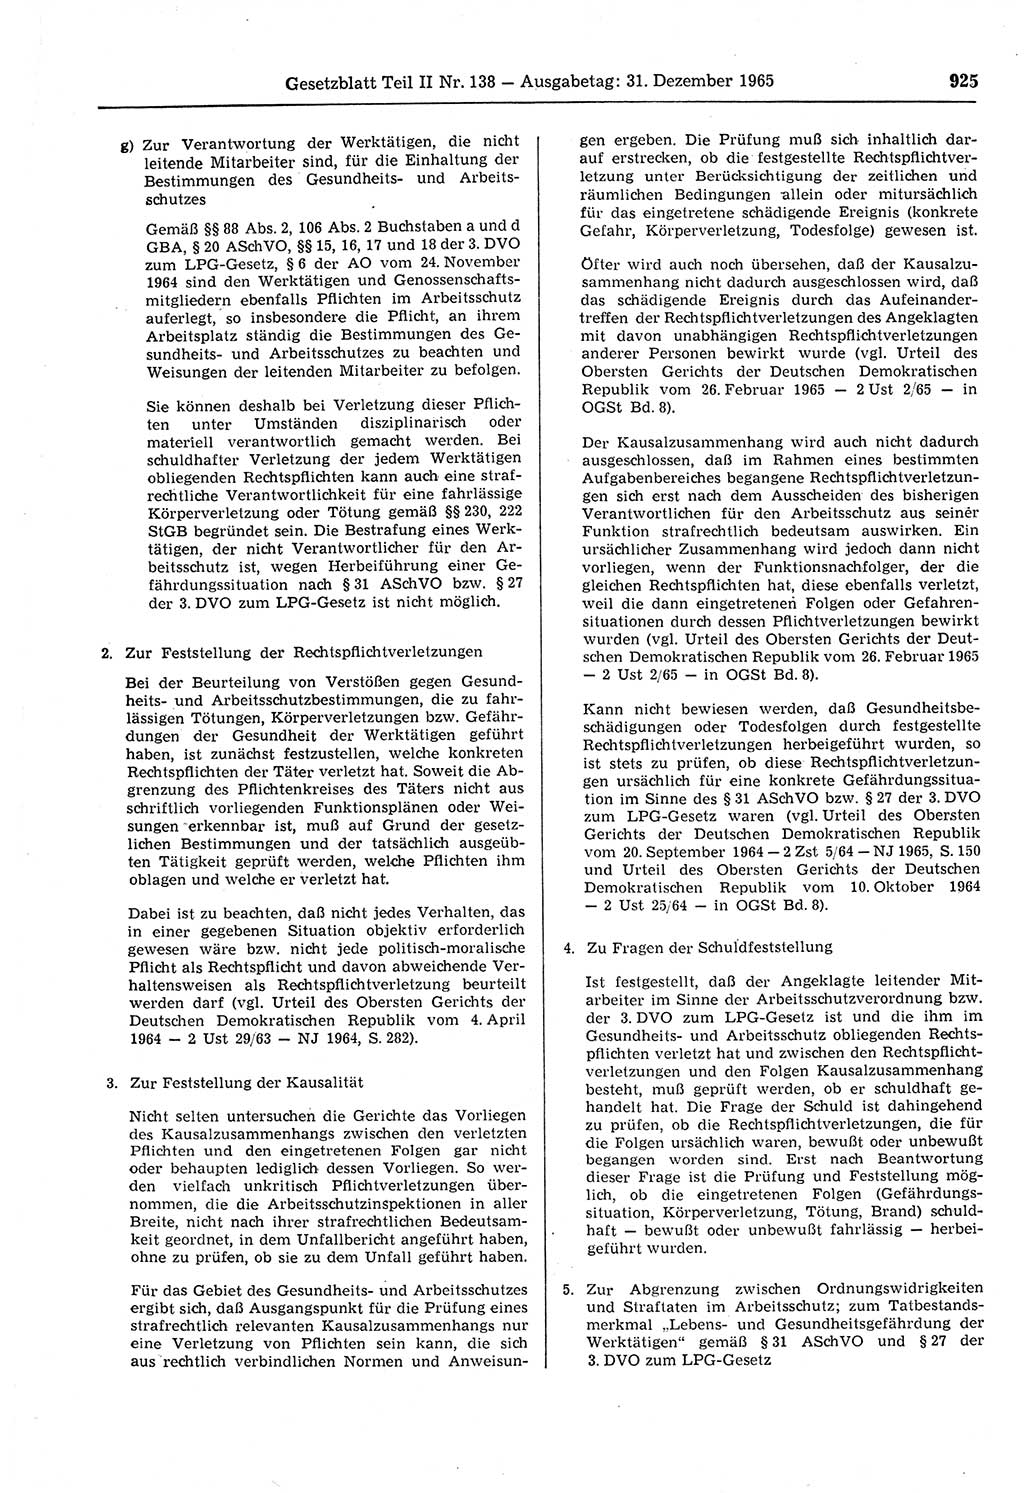 Gesetzblatt (GBl.) der Deutschen Demokratischen Republik (DDR) Teil ⅠⅠ 1965, Seite 925 (GBl. DDR ⅠⅠ 1965, S. 925)